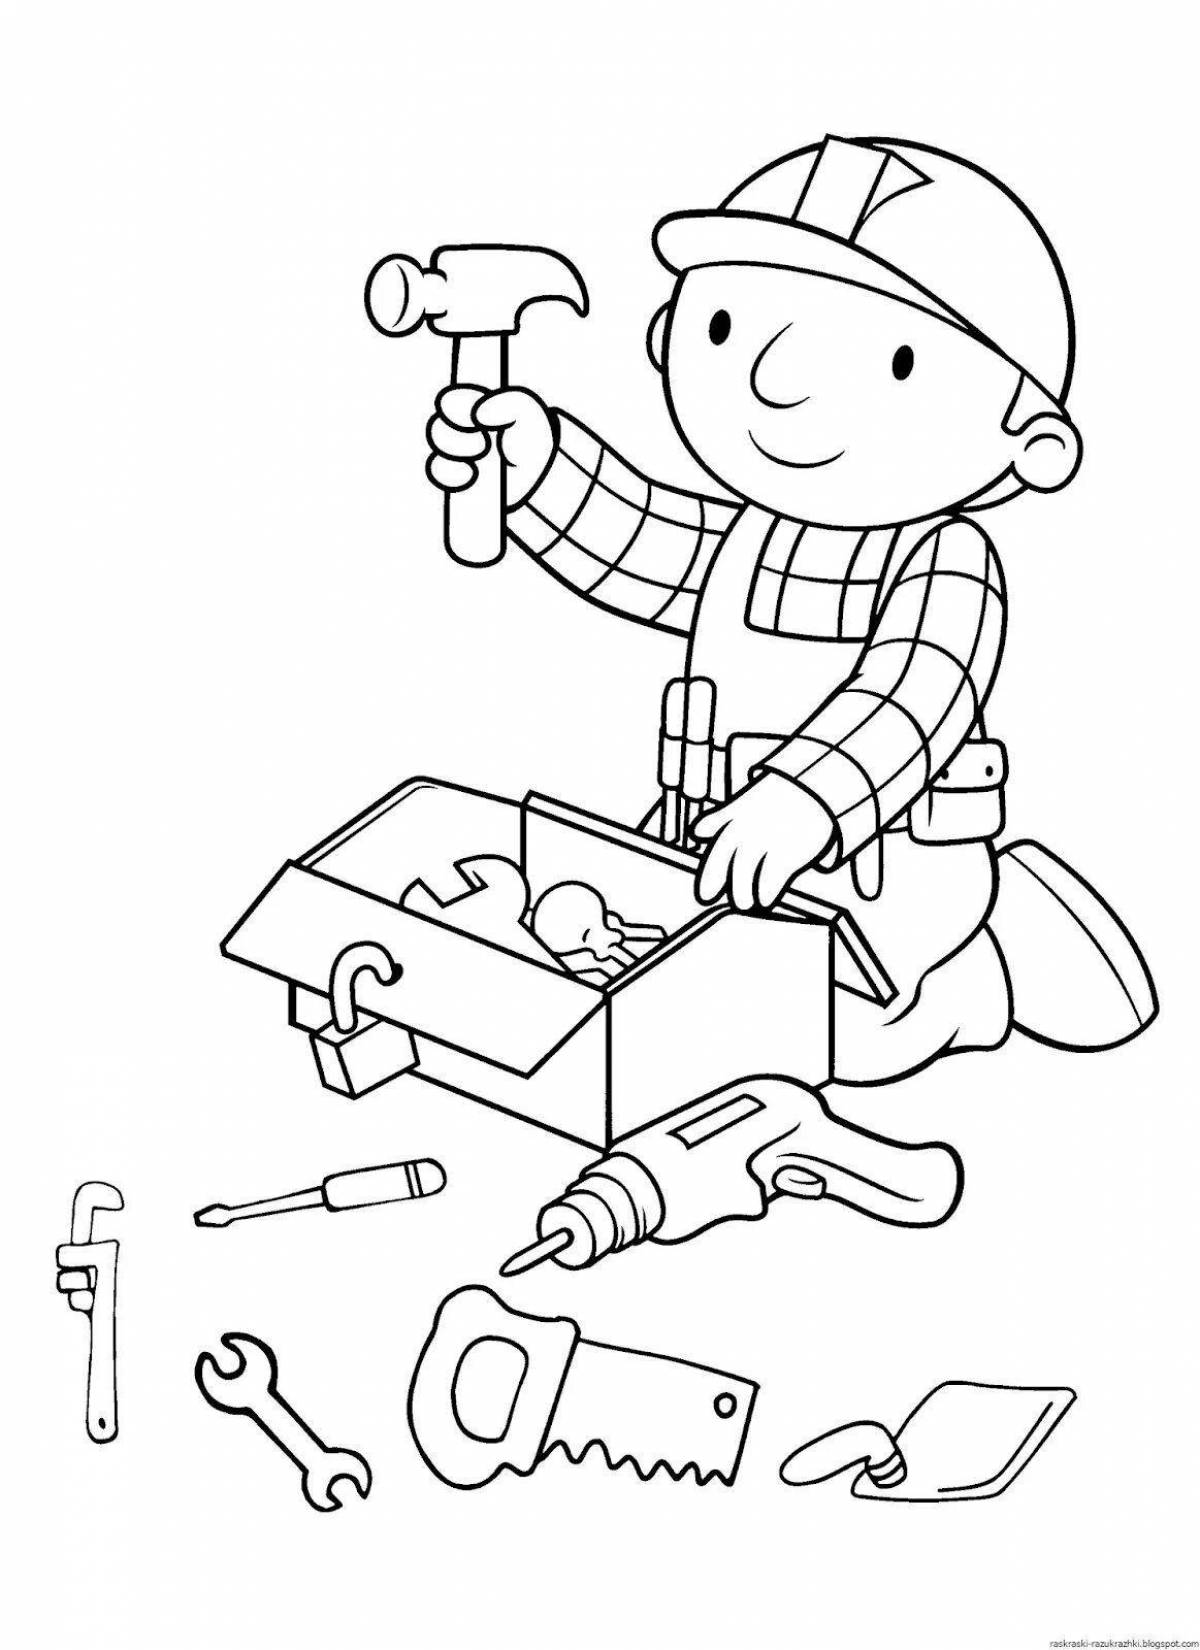 Страница раскраски творческих инструментов для детей 3-4 лет